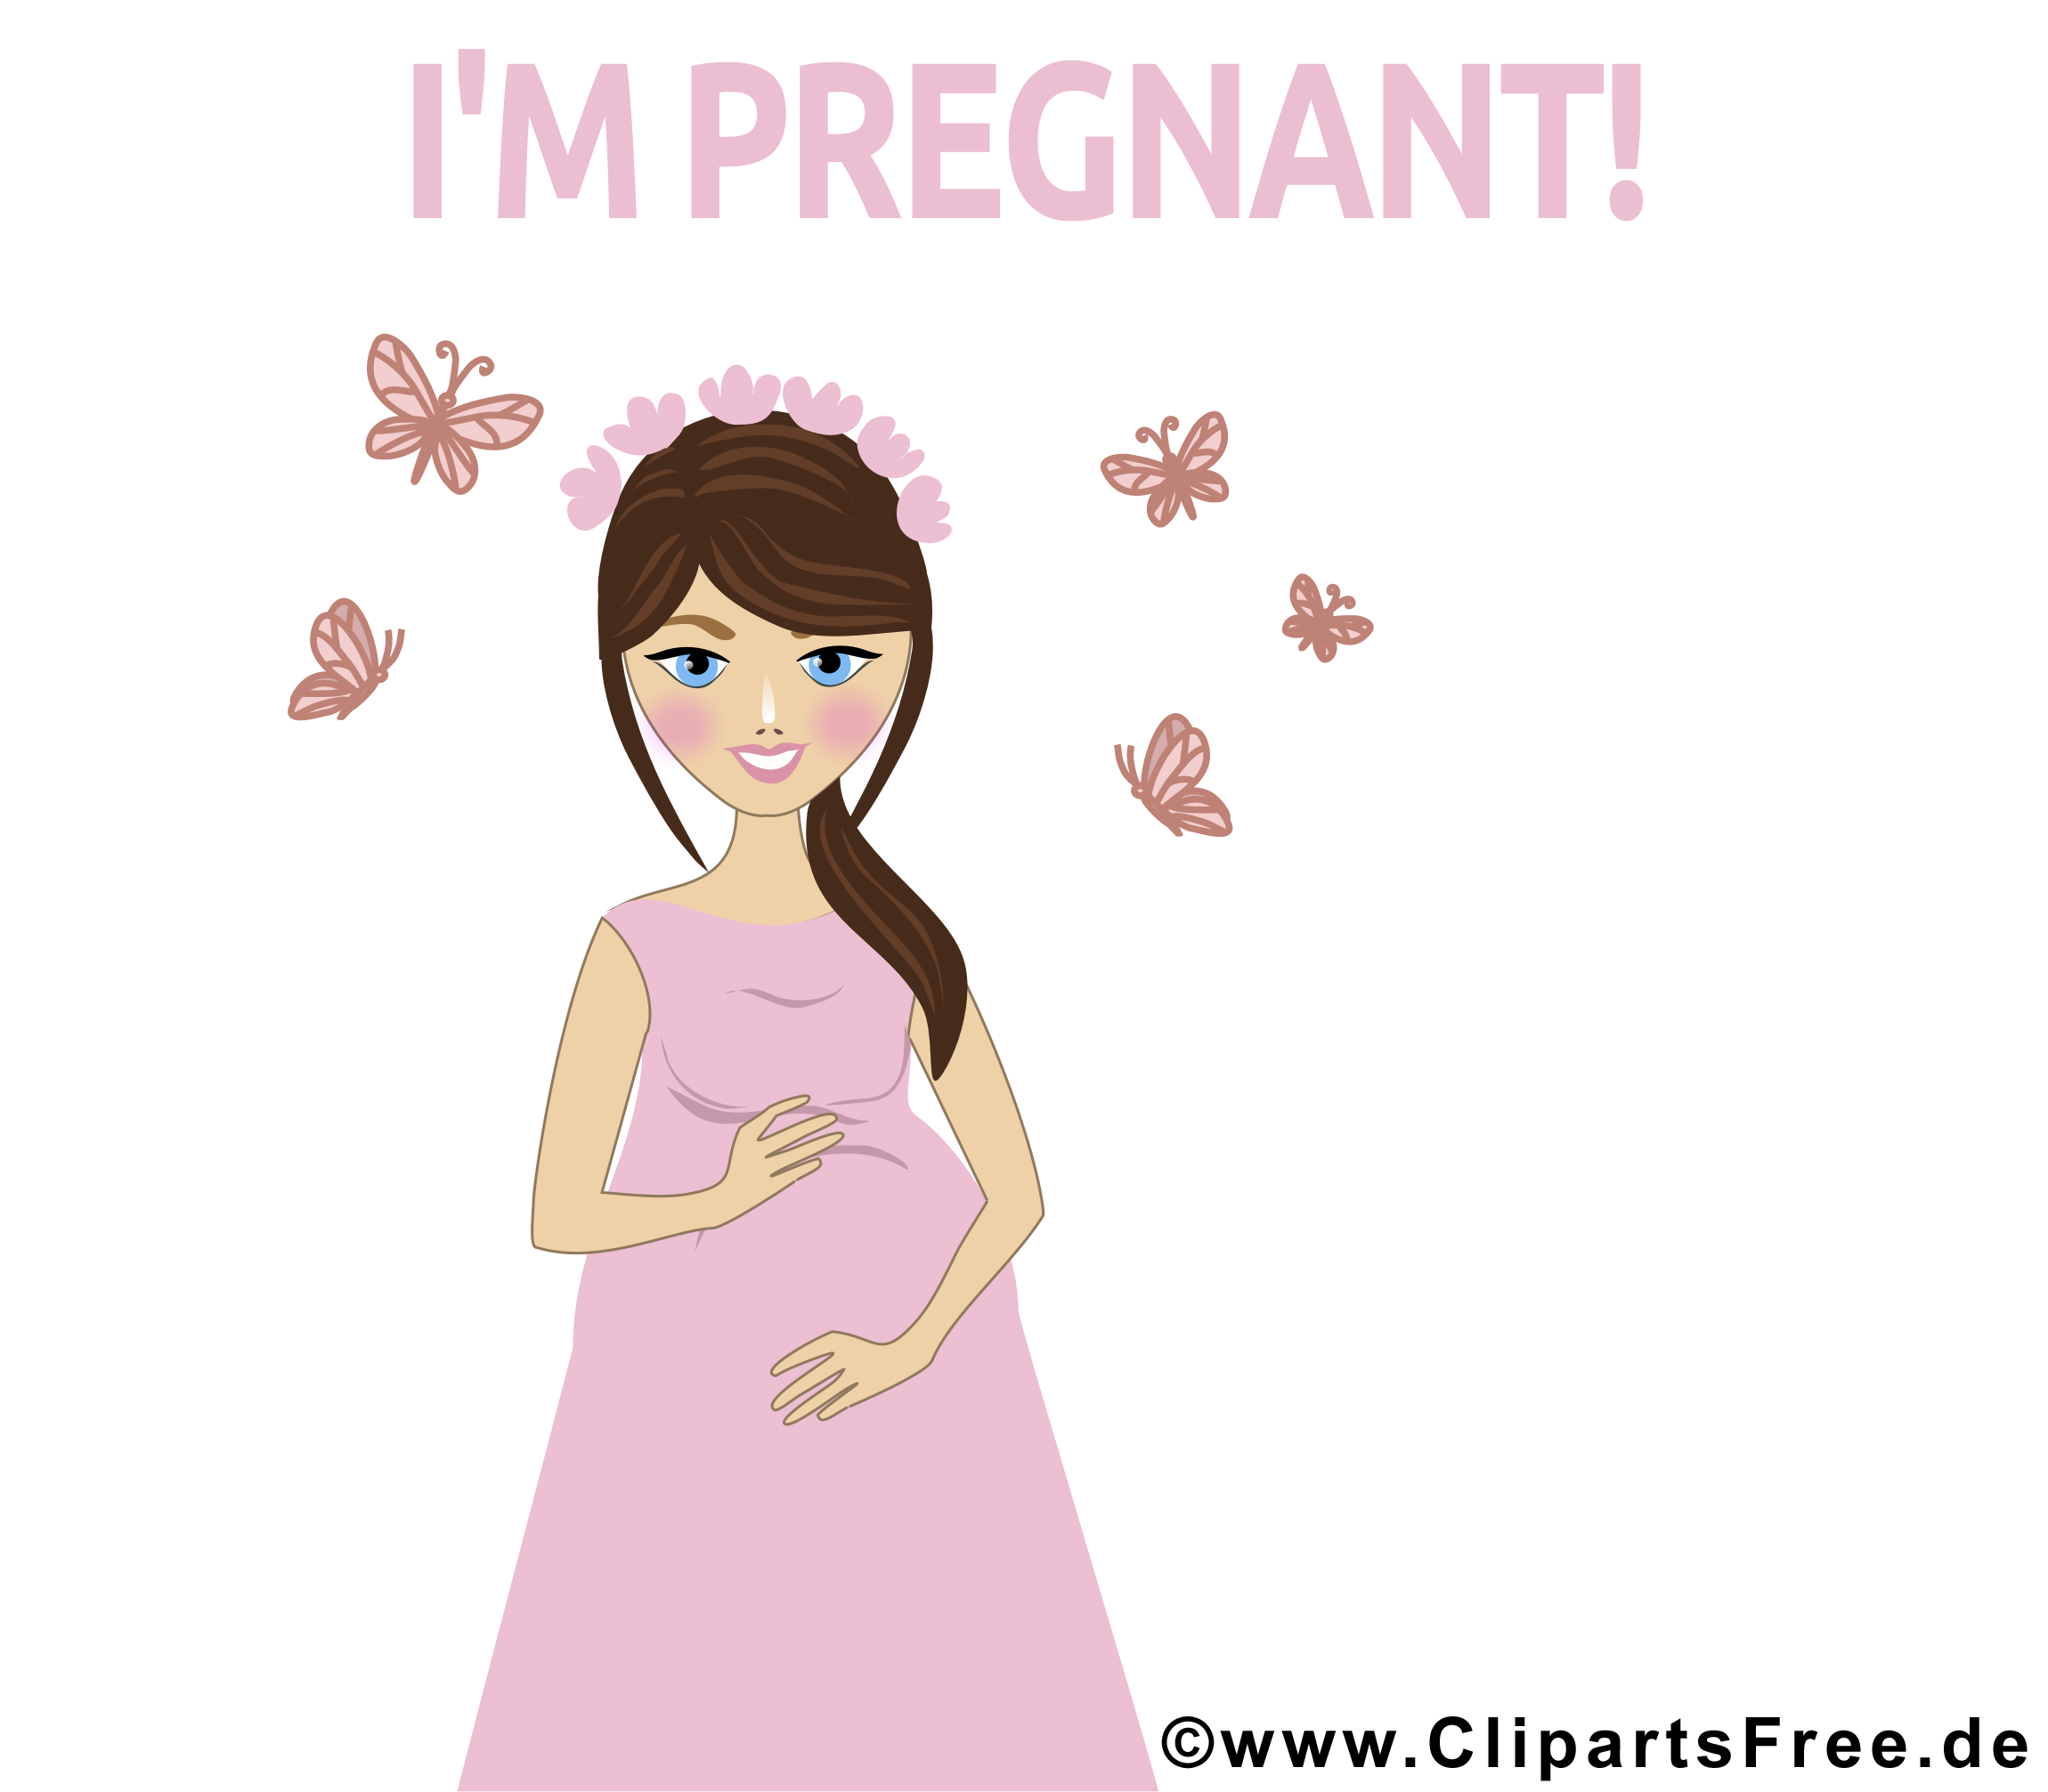 Je suis enceinte bébé illustration gratuite